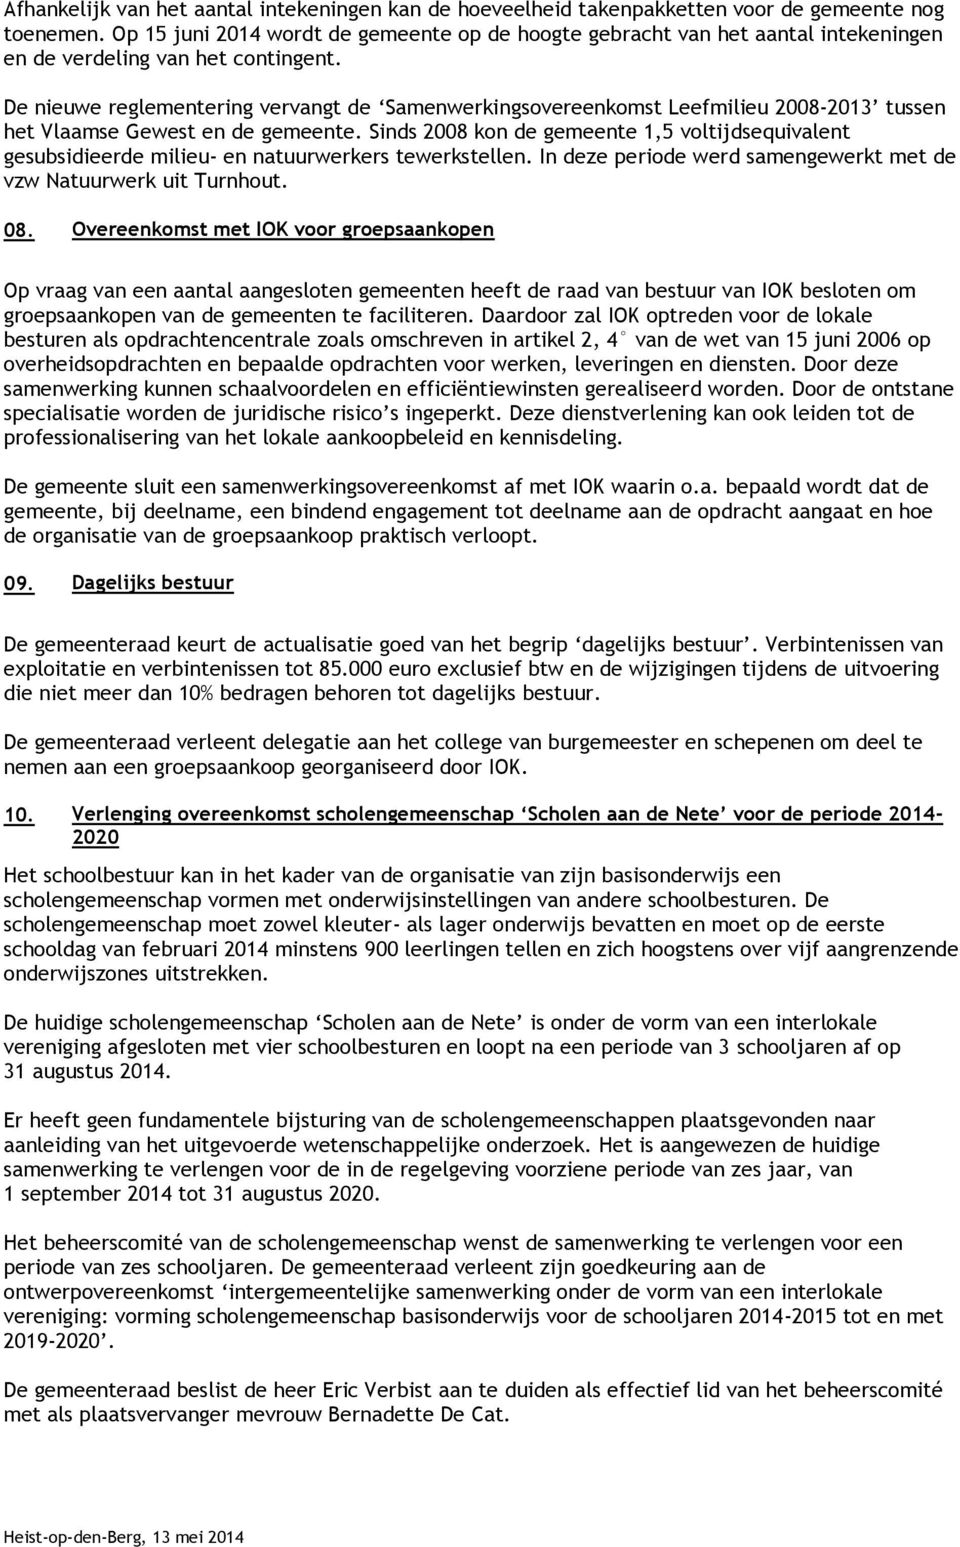 De nieuwe reglementering vervangt de Samenwerkingsovereenkomst Leefmilieu 2008-2013 tussen het Vlaamse Gewest en de gemeente.